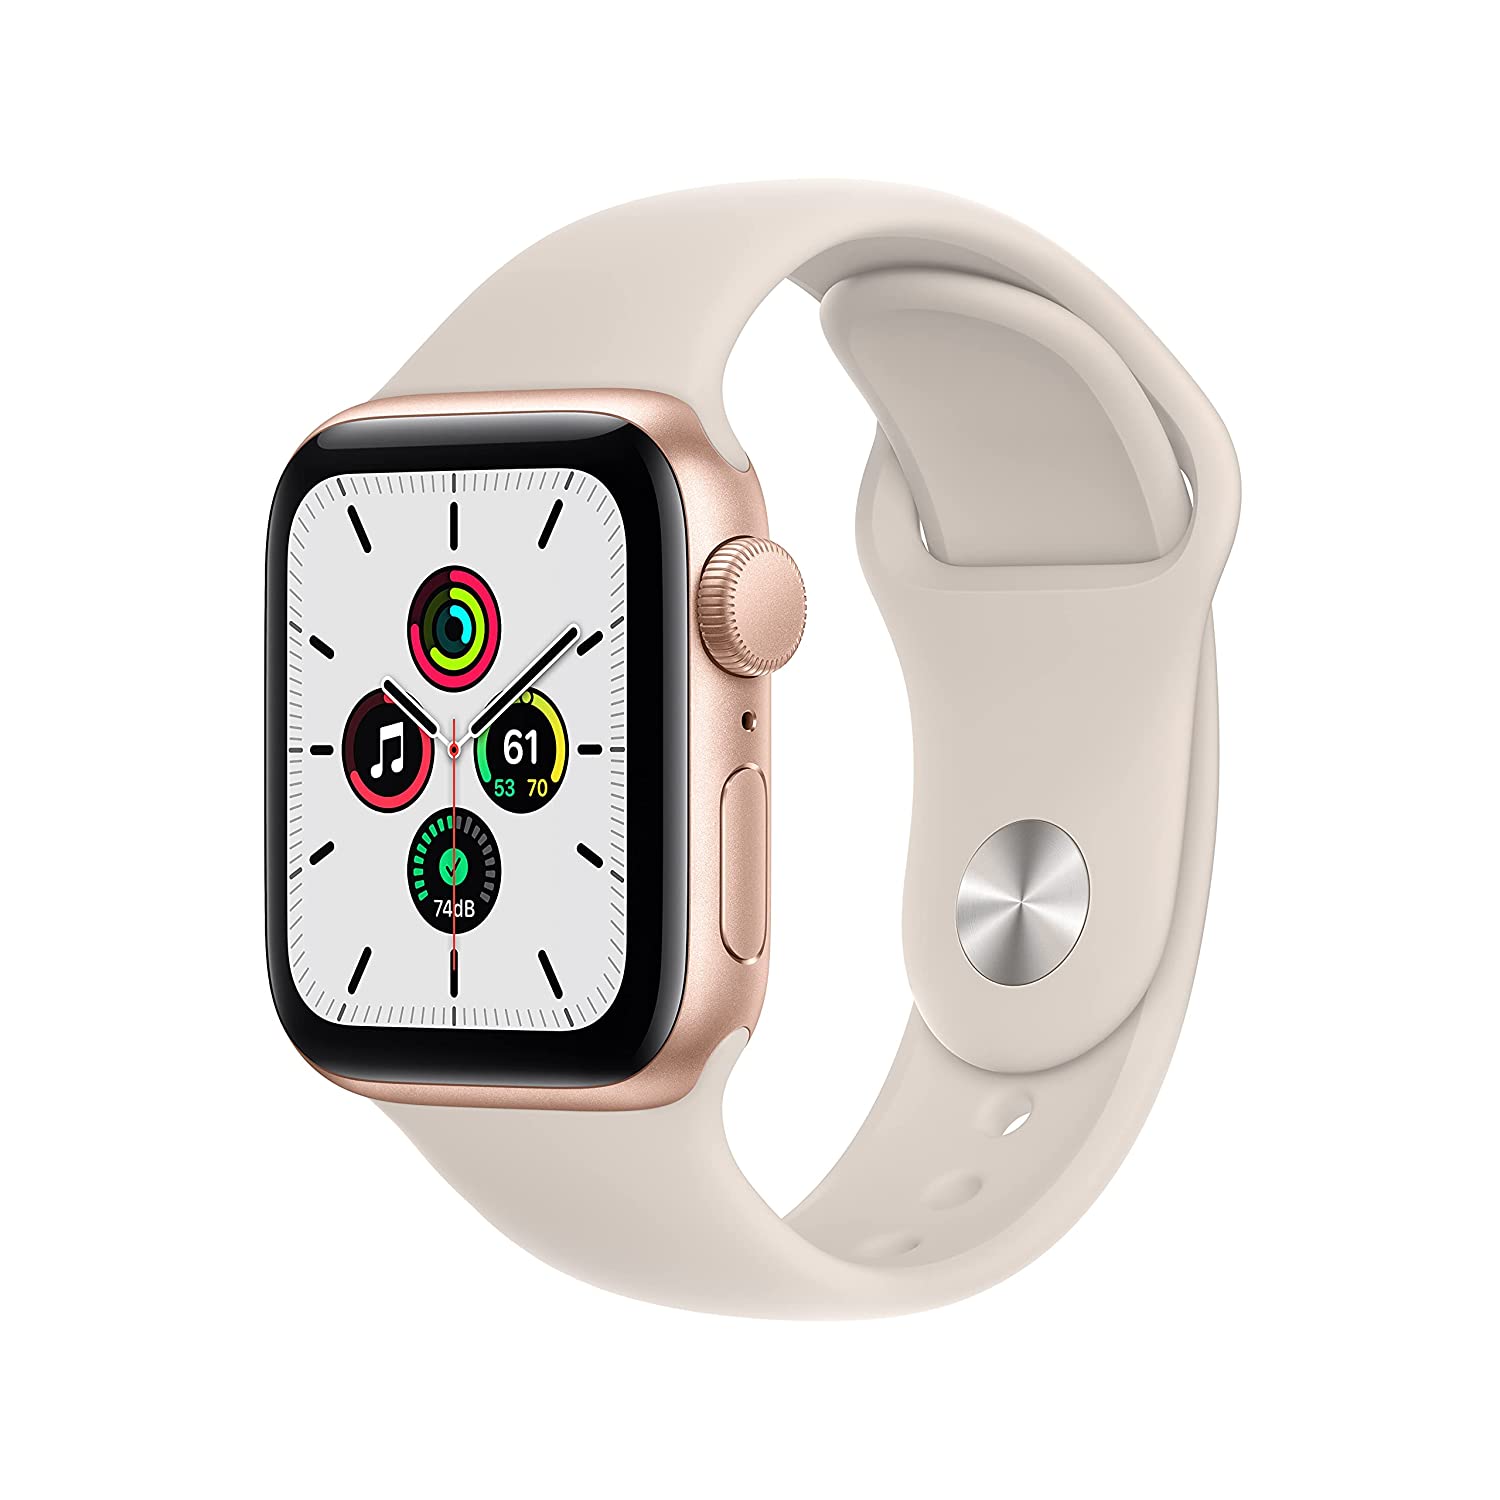 Amazon की बेस्ट वीकेंड डील, Apple Watch पर पहली बार मिल रहा है इतना डिस्काउंट!